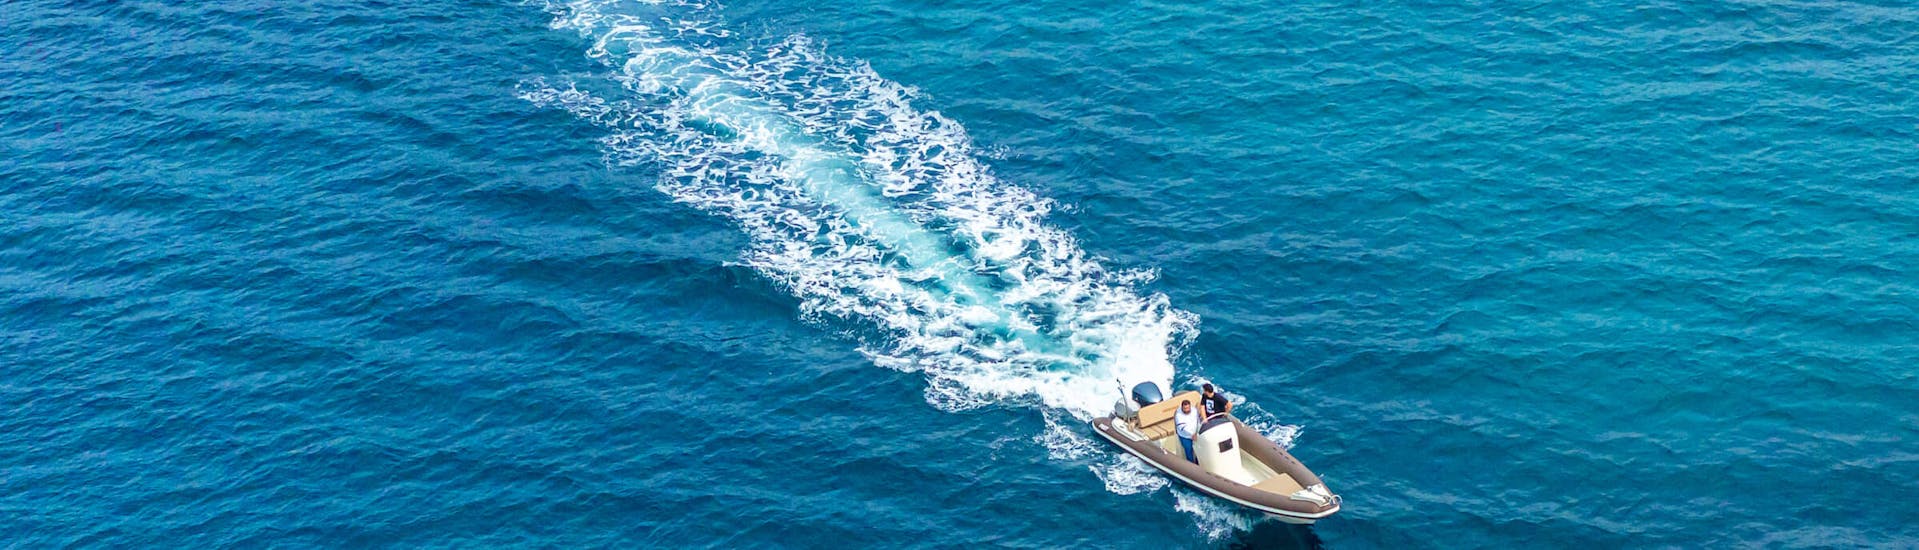 Un des bateaux en mer pendant la balade privée en bateau d'une demi-journée sur les plus belles plages de Milos avec Venus of Milos.